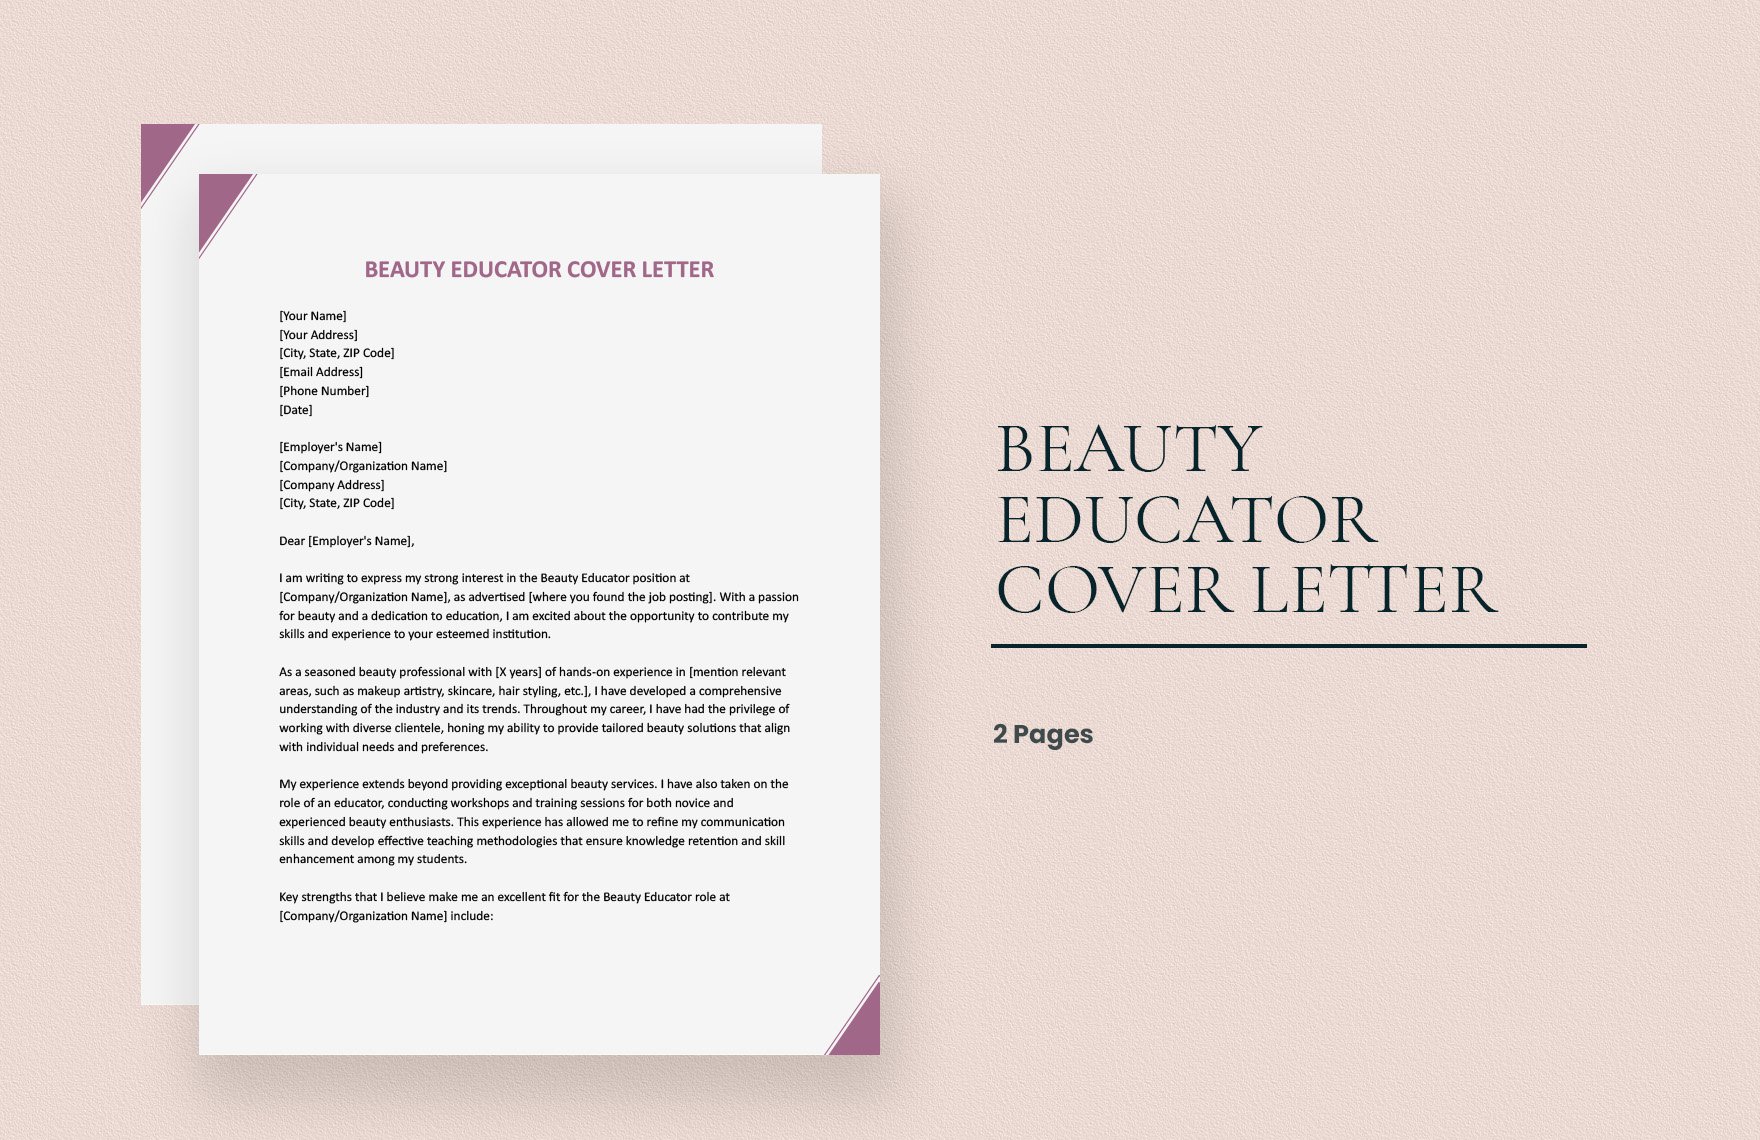 Beauty Educator Cover Letter